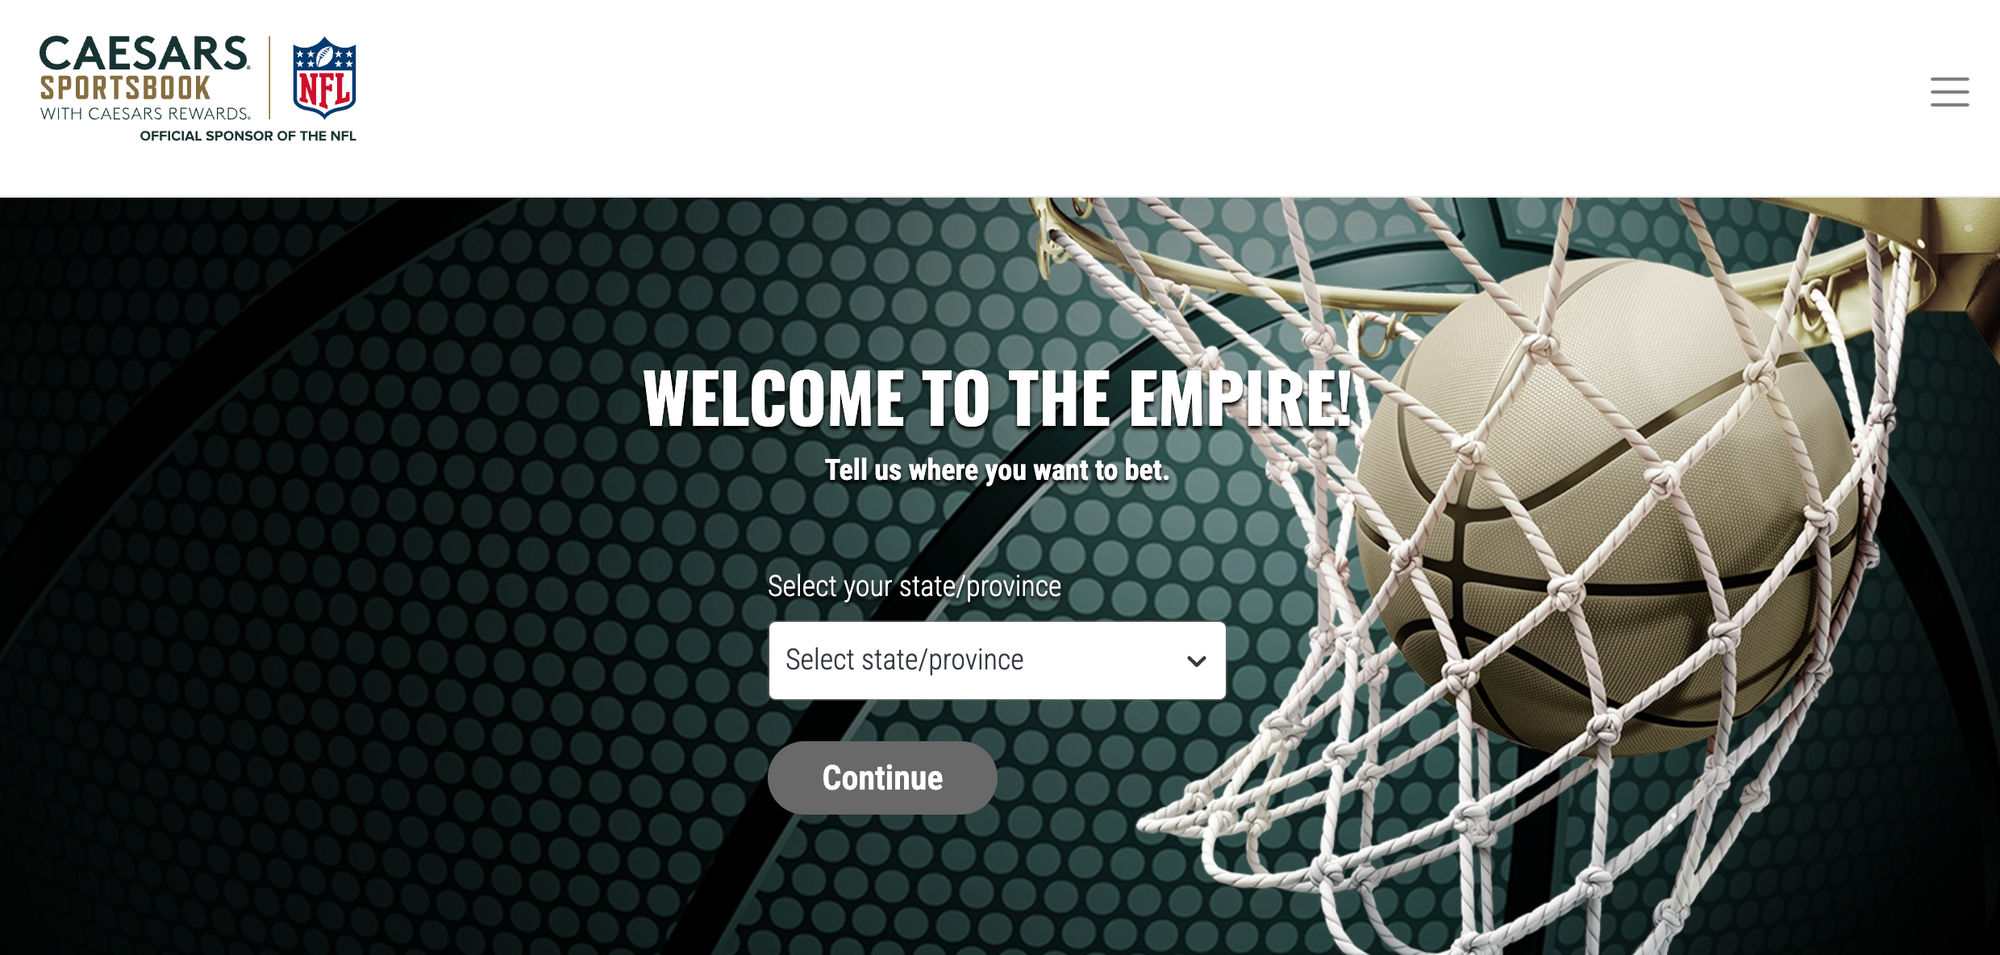 ceasars sportsbook homepage